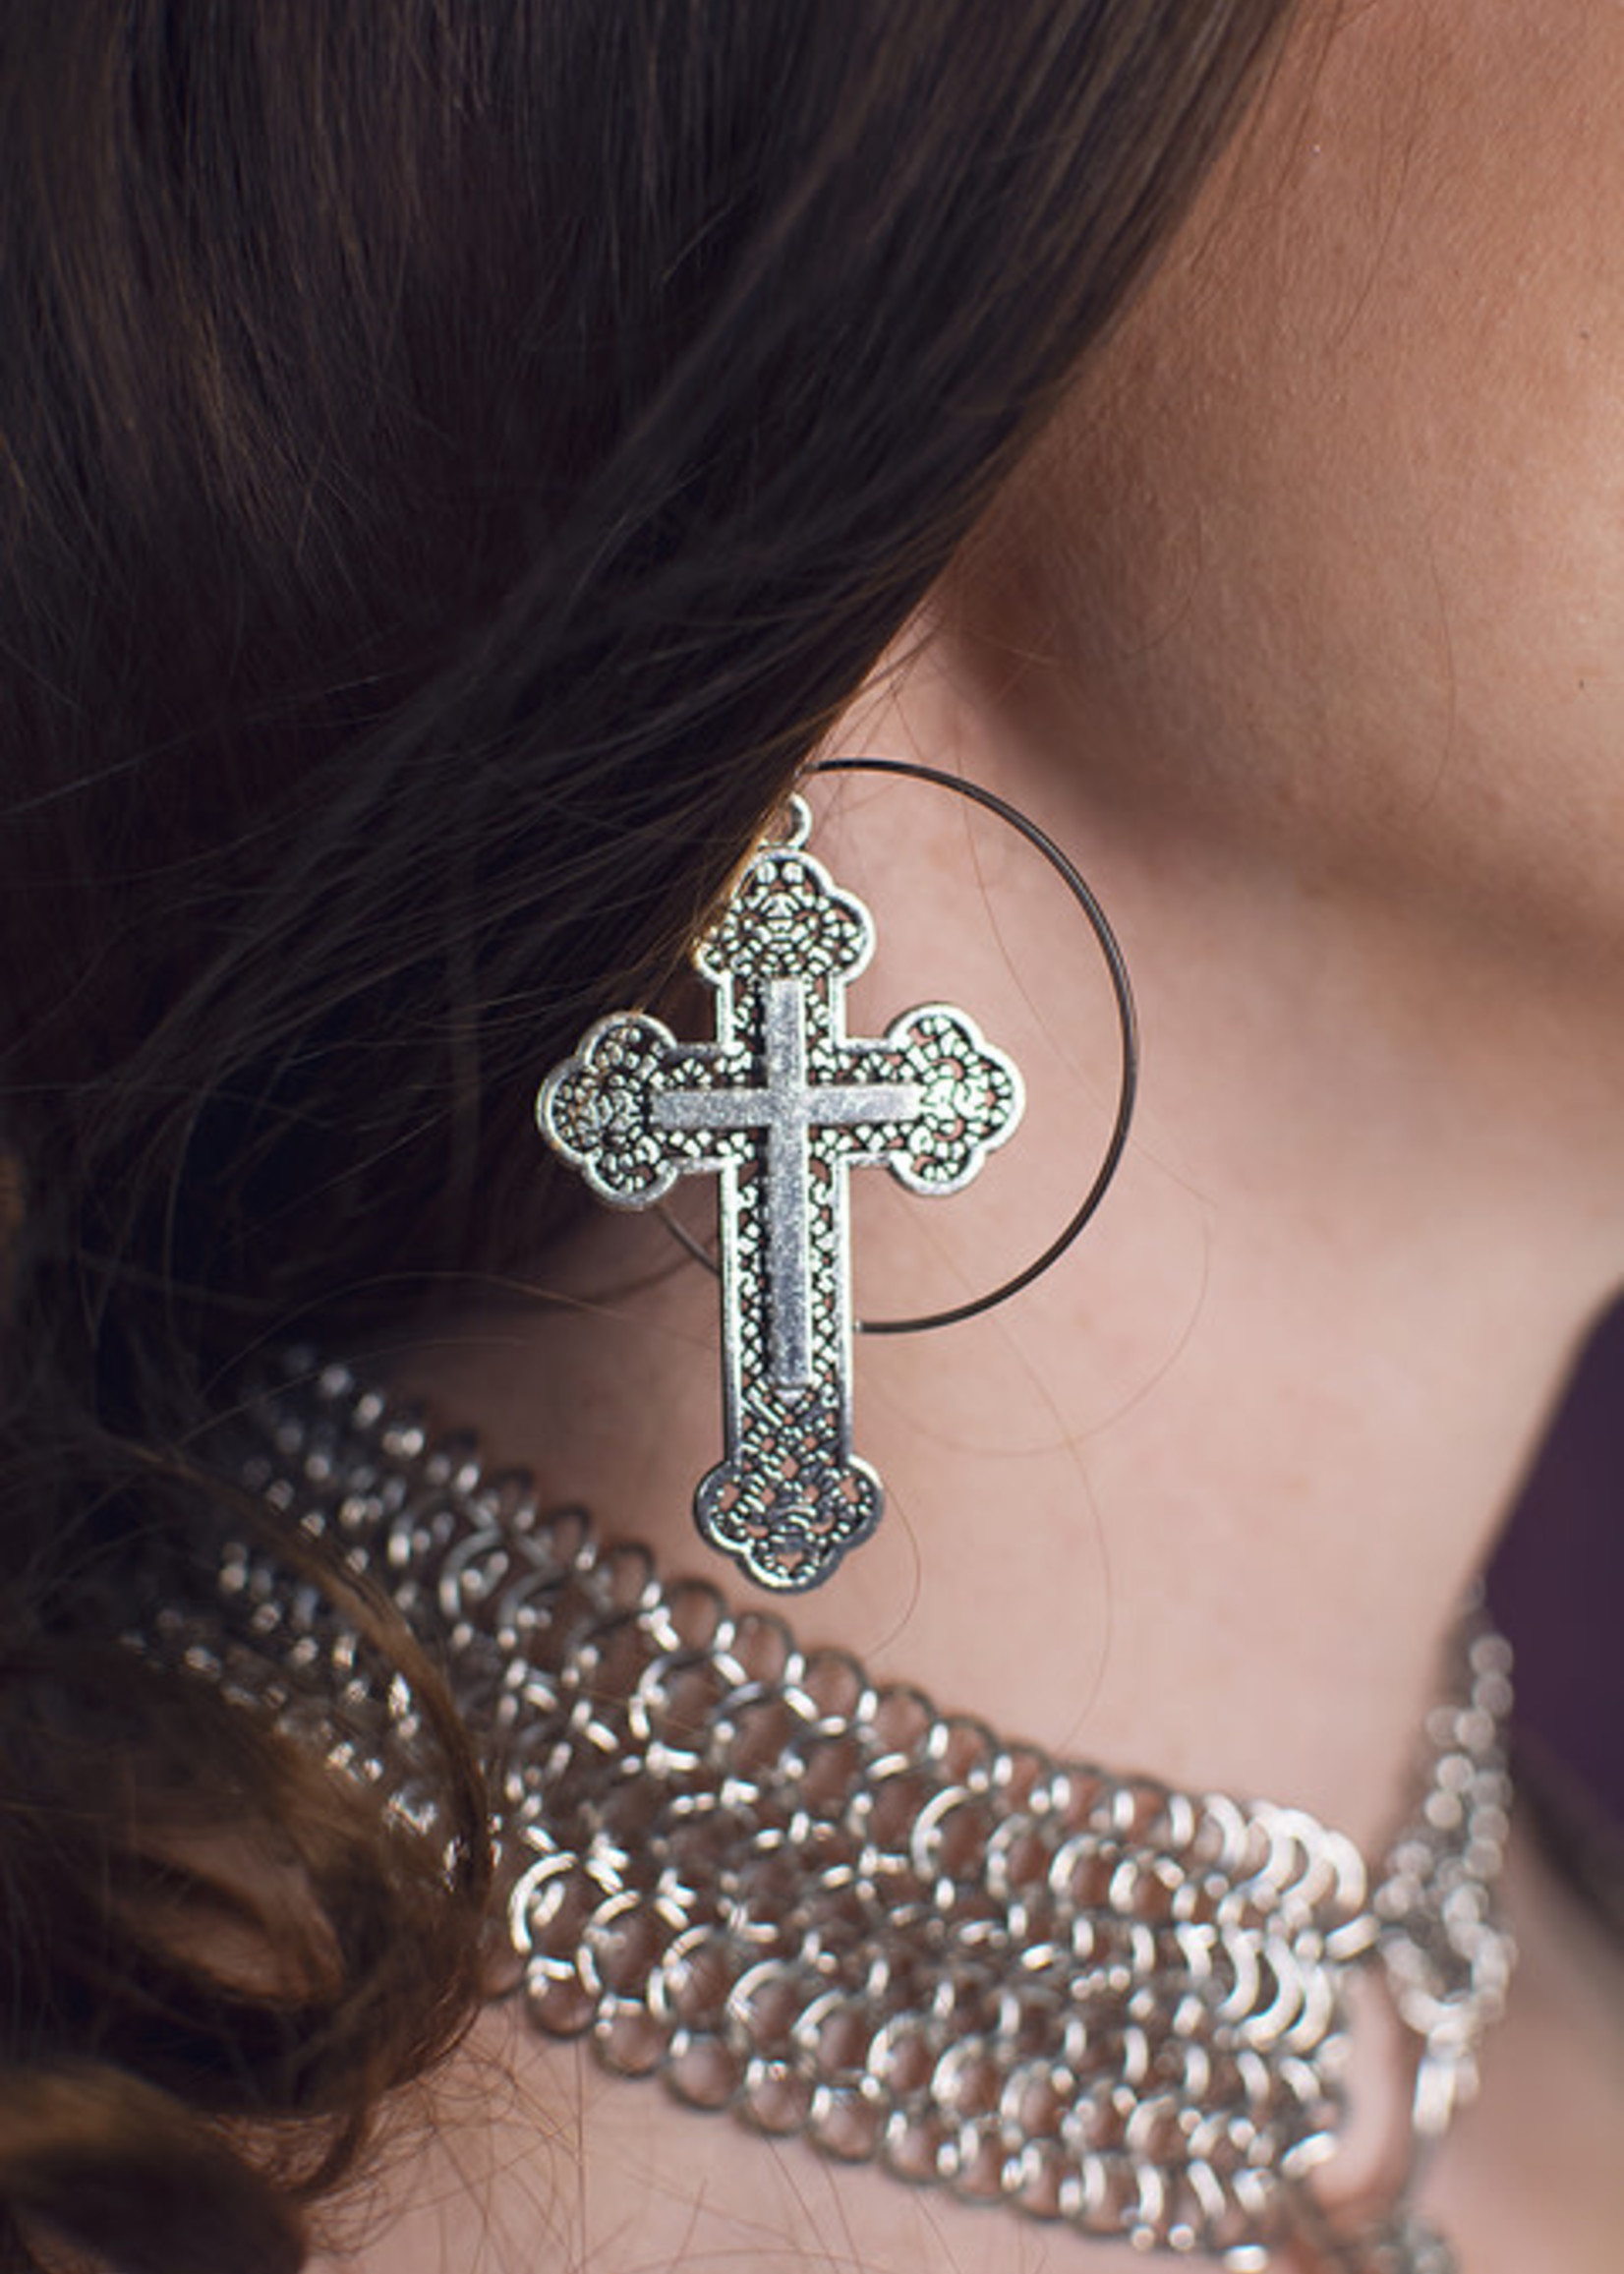 St. James Halo Cross Earrings Silver